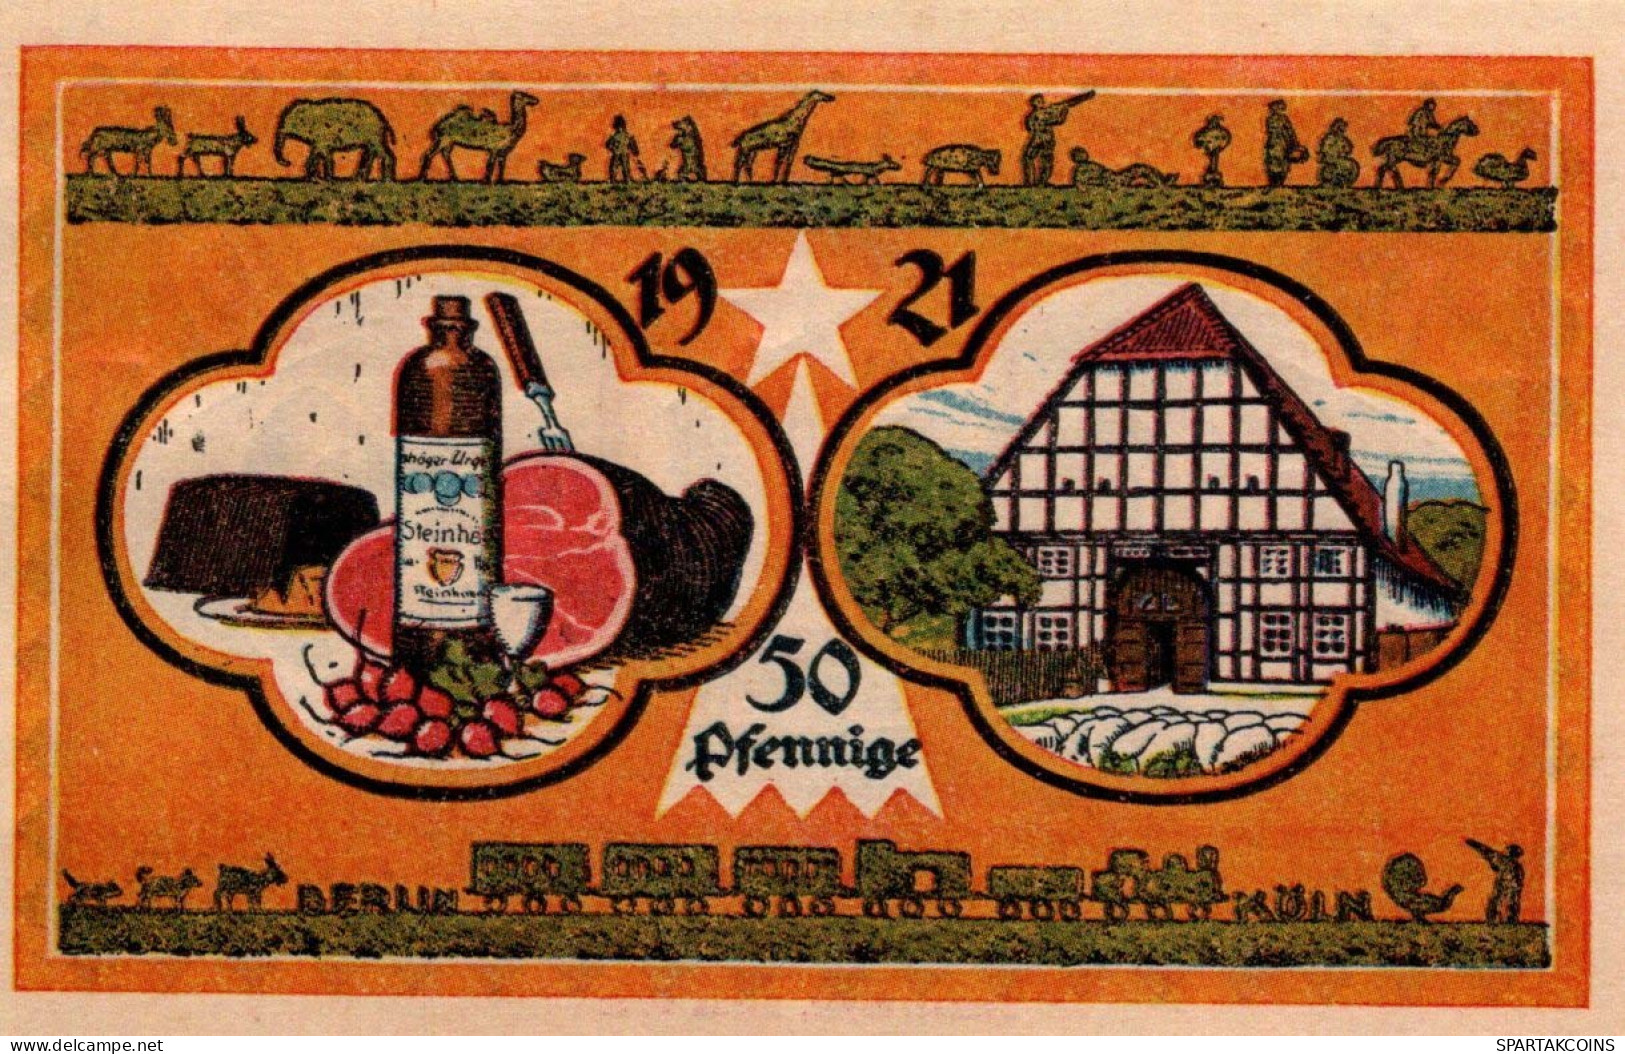 50 PFENNIG 1921 Stadt STEINHEIM IN WESTFALEN Westphalia UNC DEUTSCHLAND #PI962 - [11] Emissioni Locali